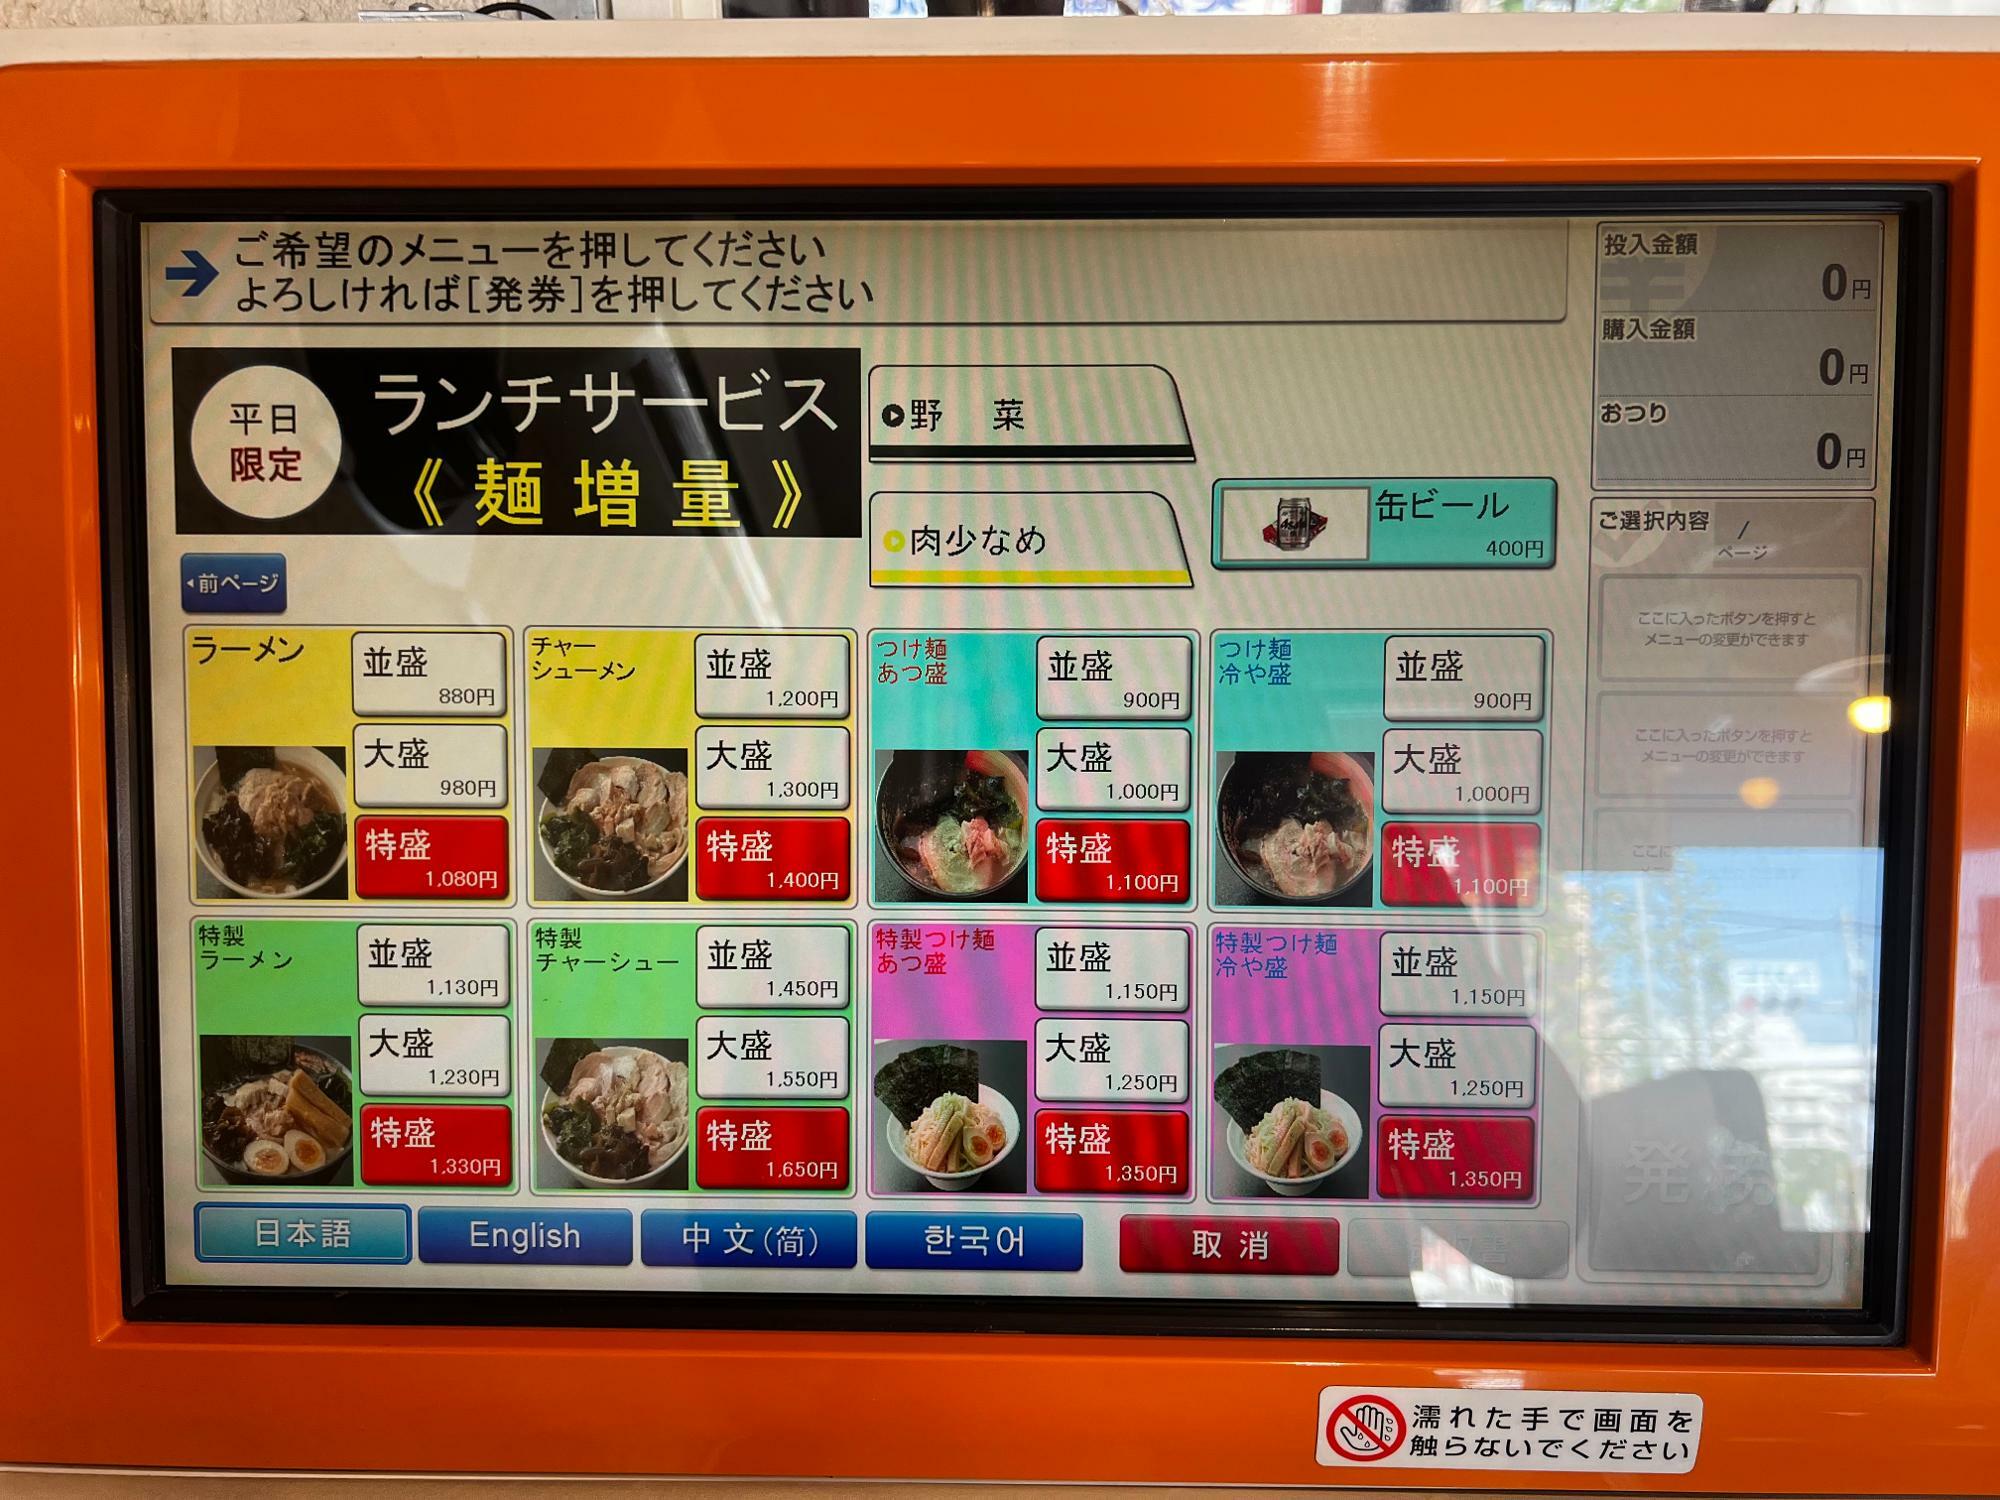 ラーメンだけでなく、つけ麺の用意もあります。中国語、韓国語にも対応している券売機です。